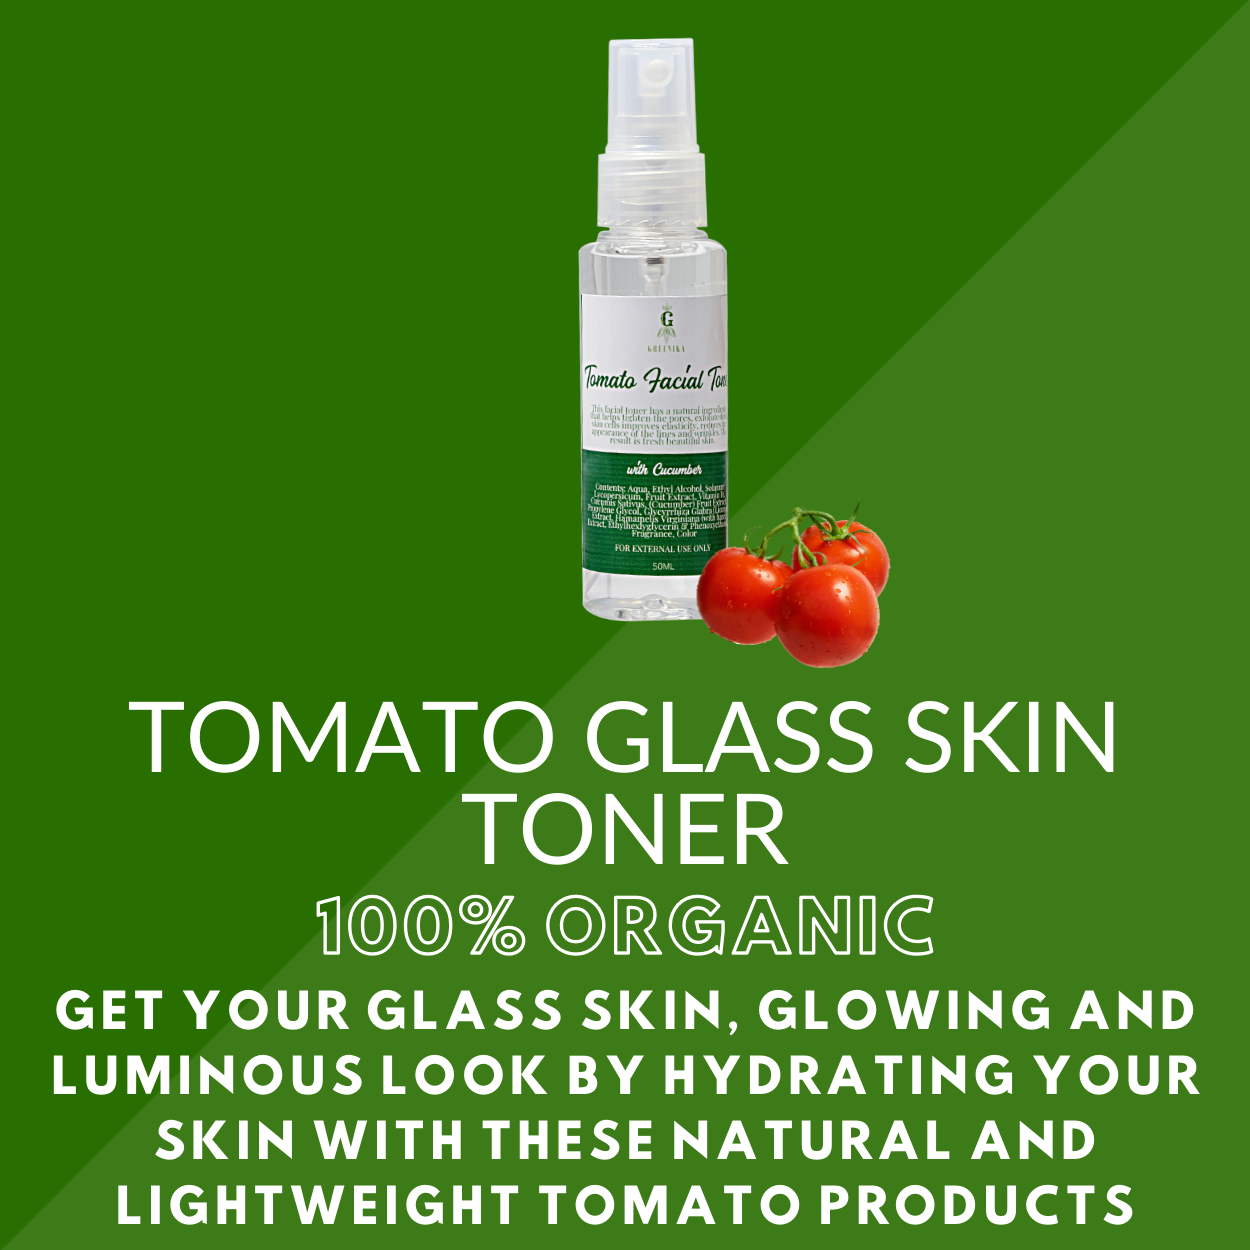 Greenika Tomato Glass Skin Toner